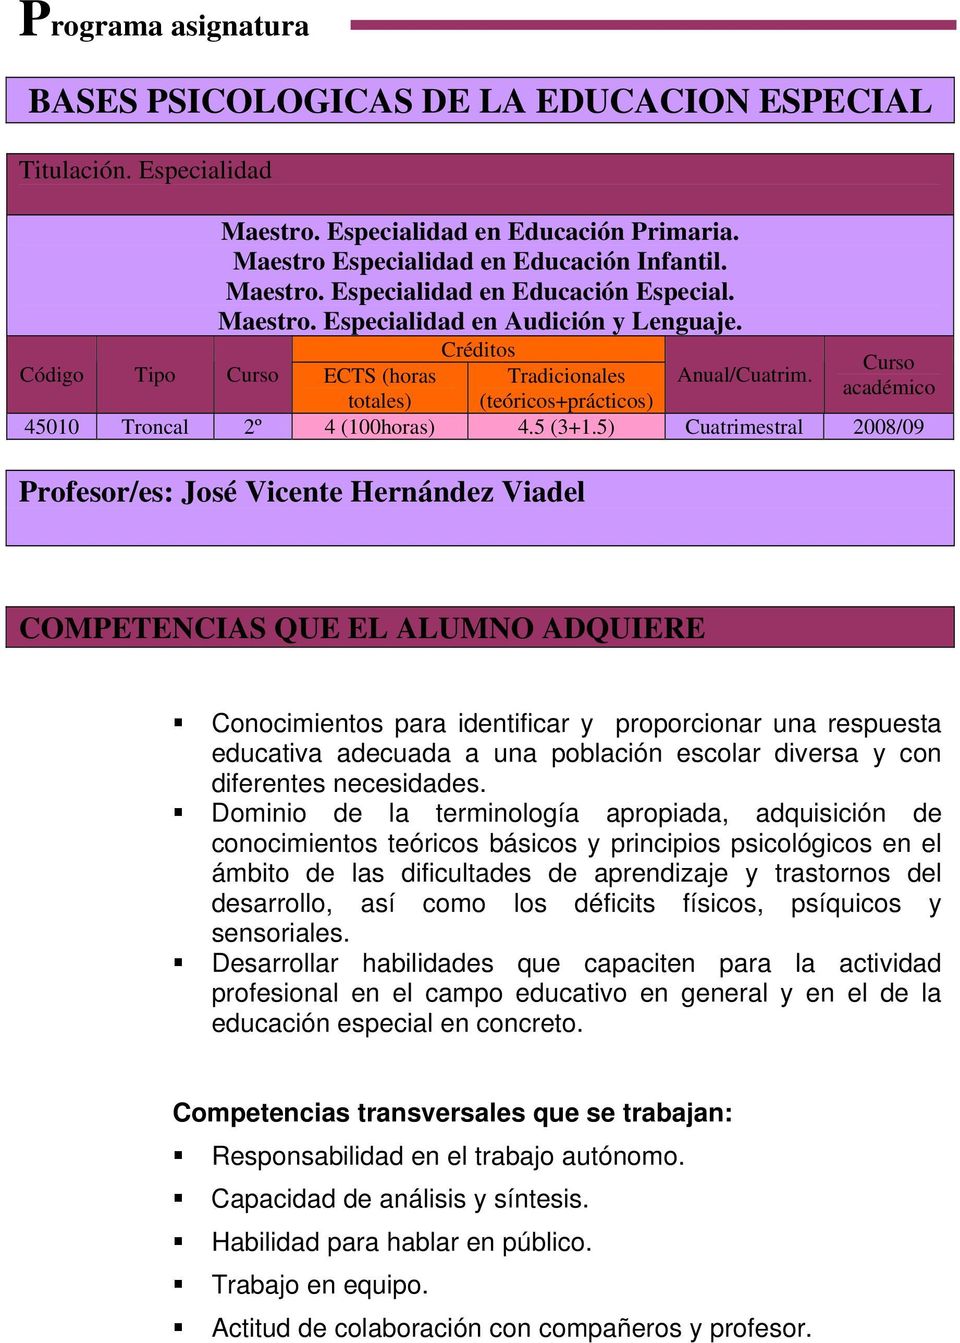 5) Cuatrimestral 2008/09 Profesor/es: José Vicente Hernández Viadel COMPETENCIAS QUE EL ALUMNO ADQUIERE Conocimientos para identificar y proporcionar una respuesta educativa adecuada a una población